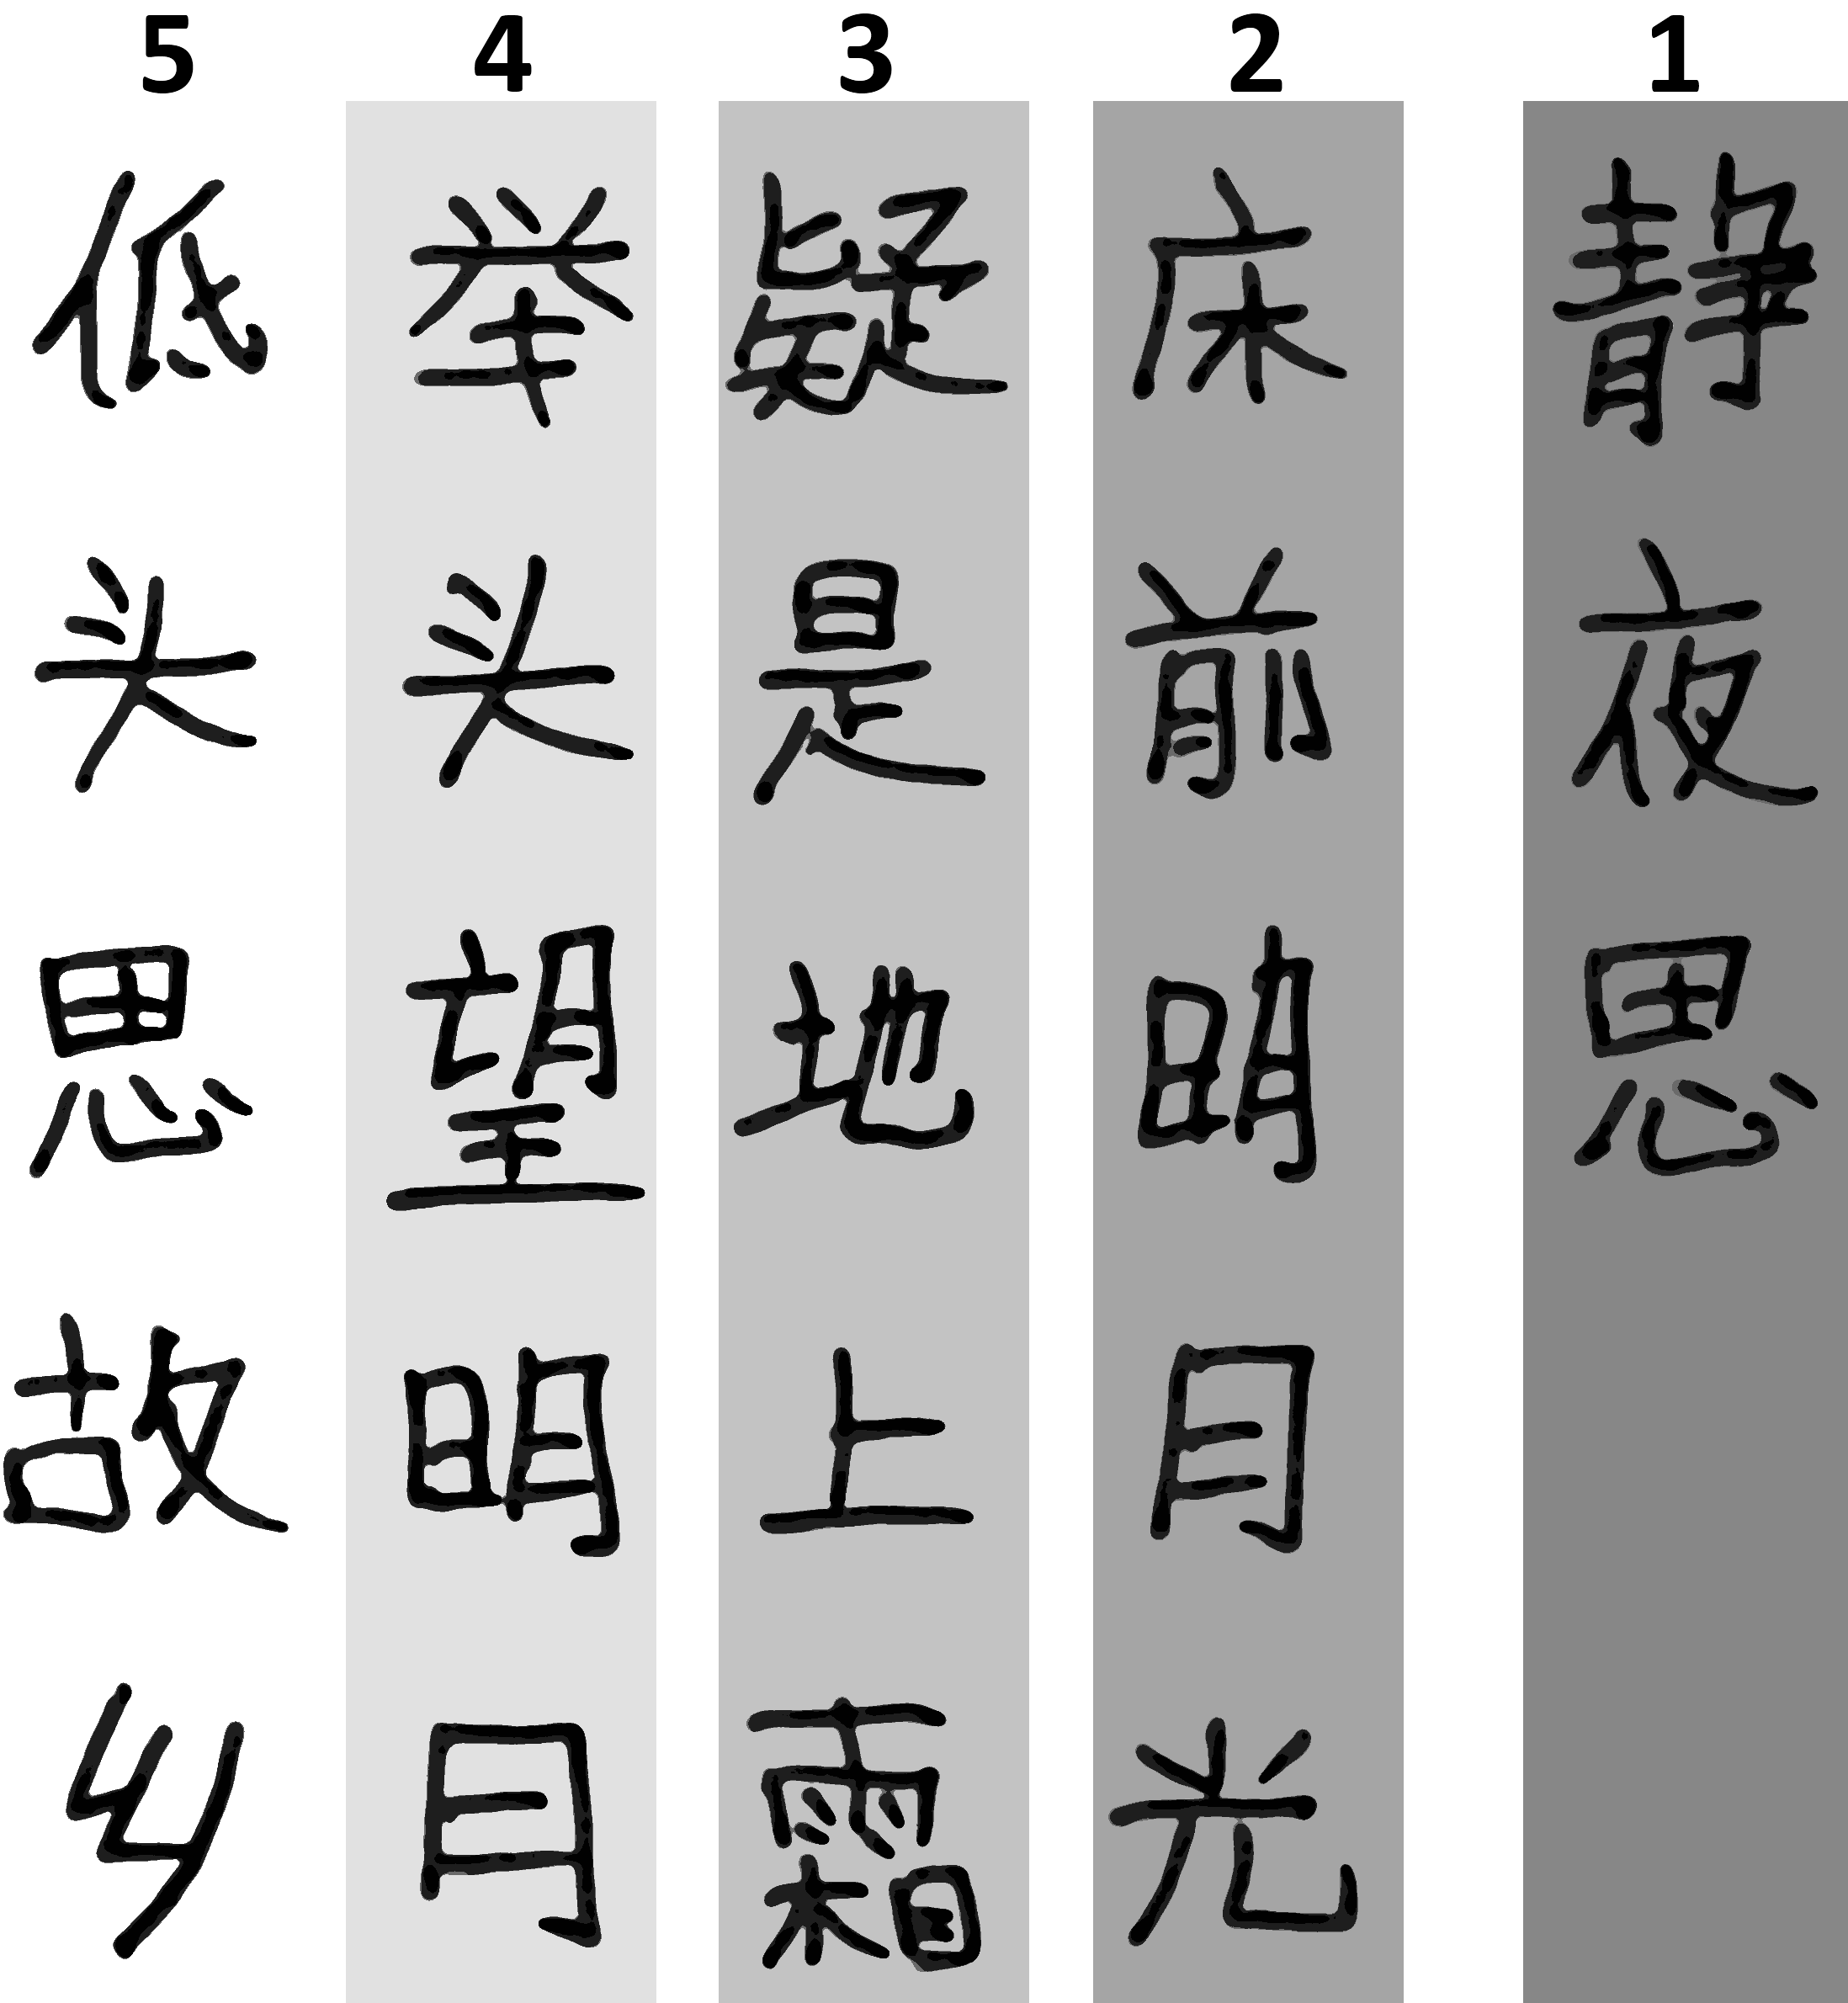 Chapitre 3 Les caractères chinois en 20 questions 1. Dans quel sens écrit-on le chinois?